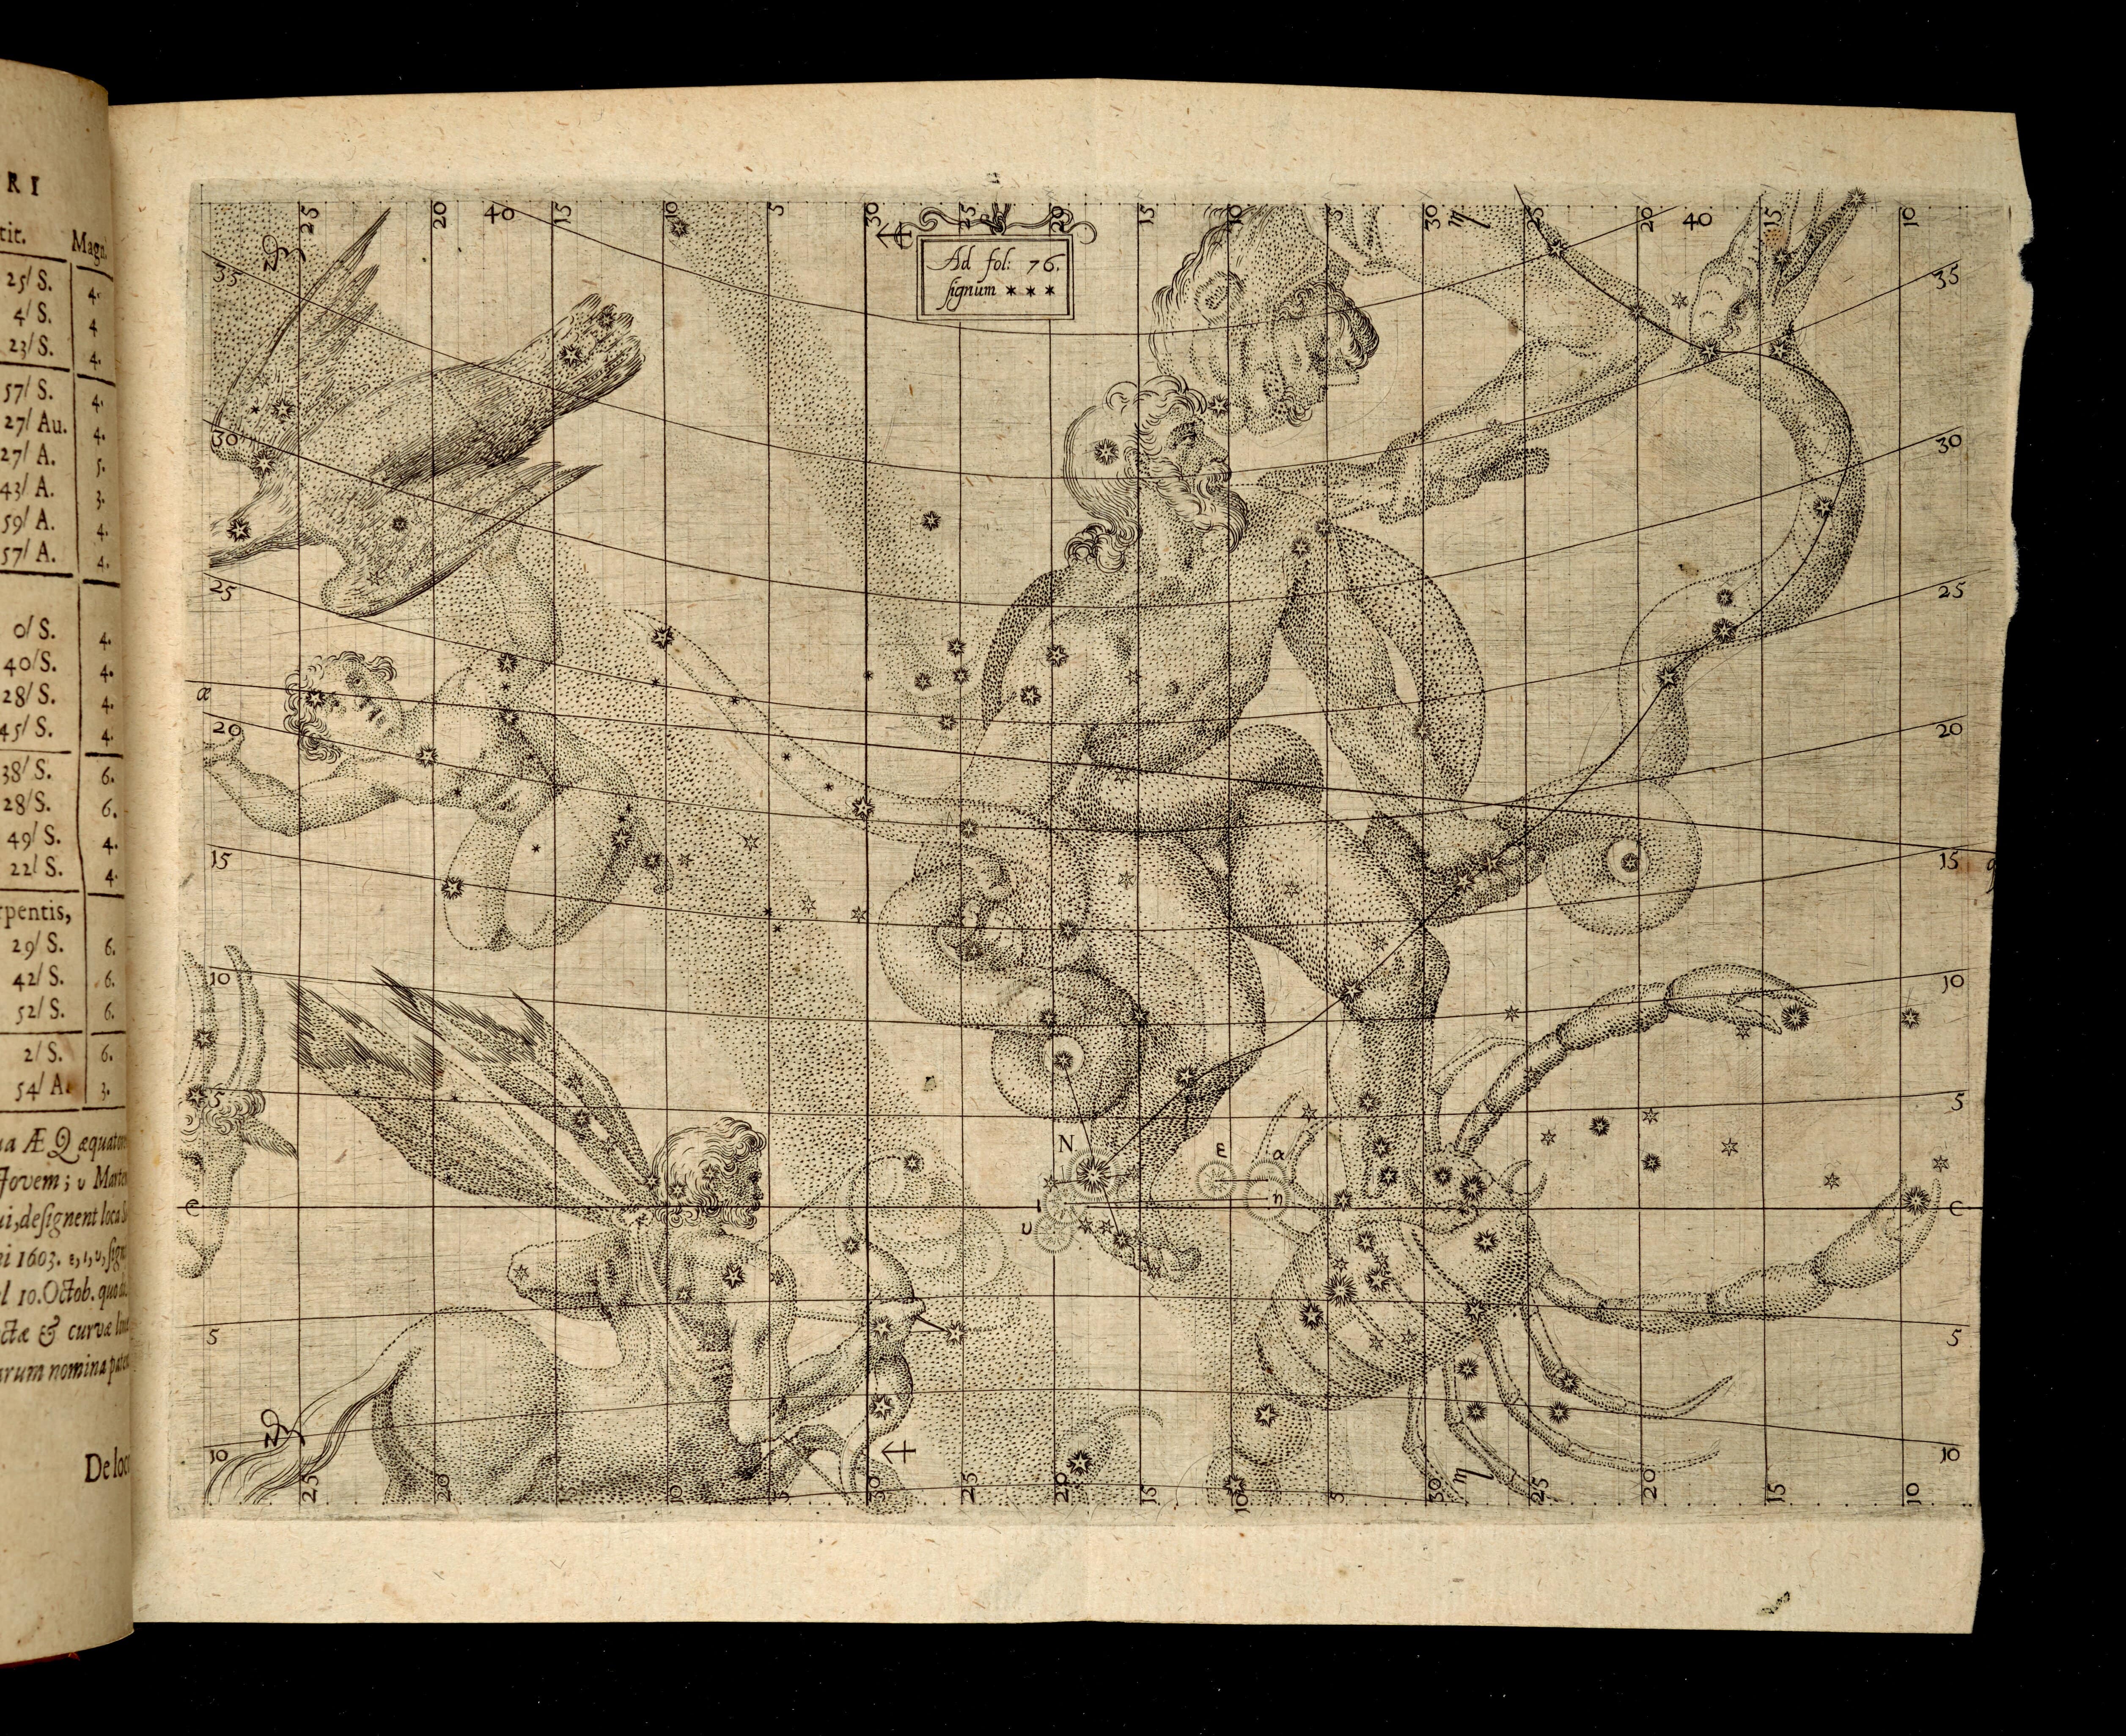 BT3.180.17, plate p. 76, Kepler, De stella nova in pede Serpentarii (1606) 